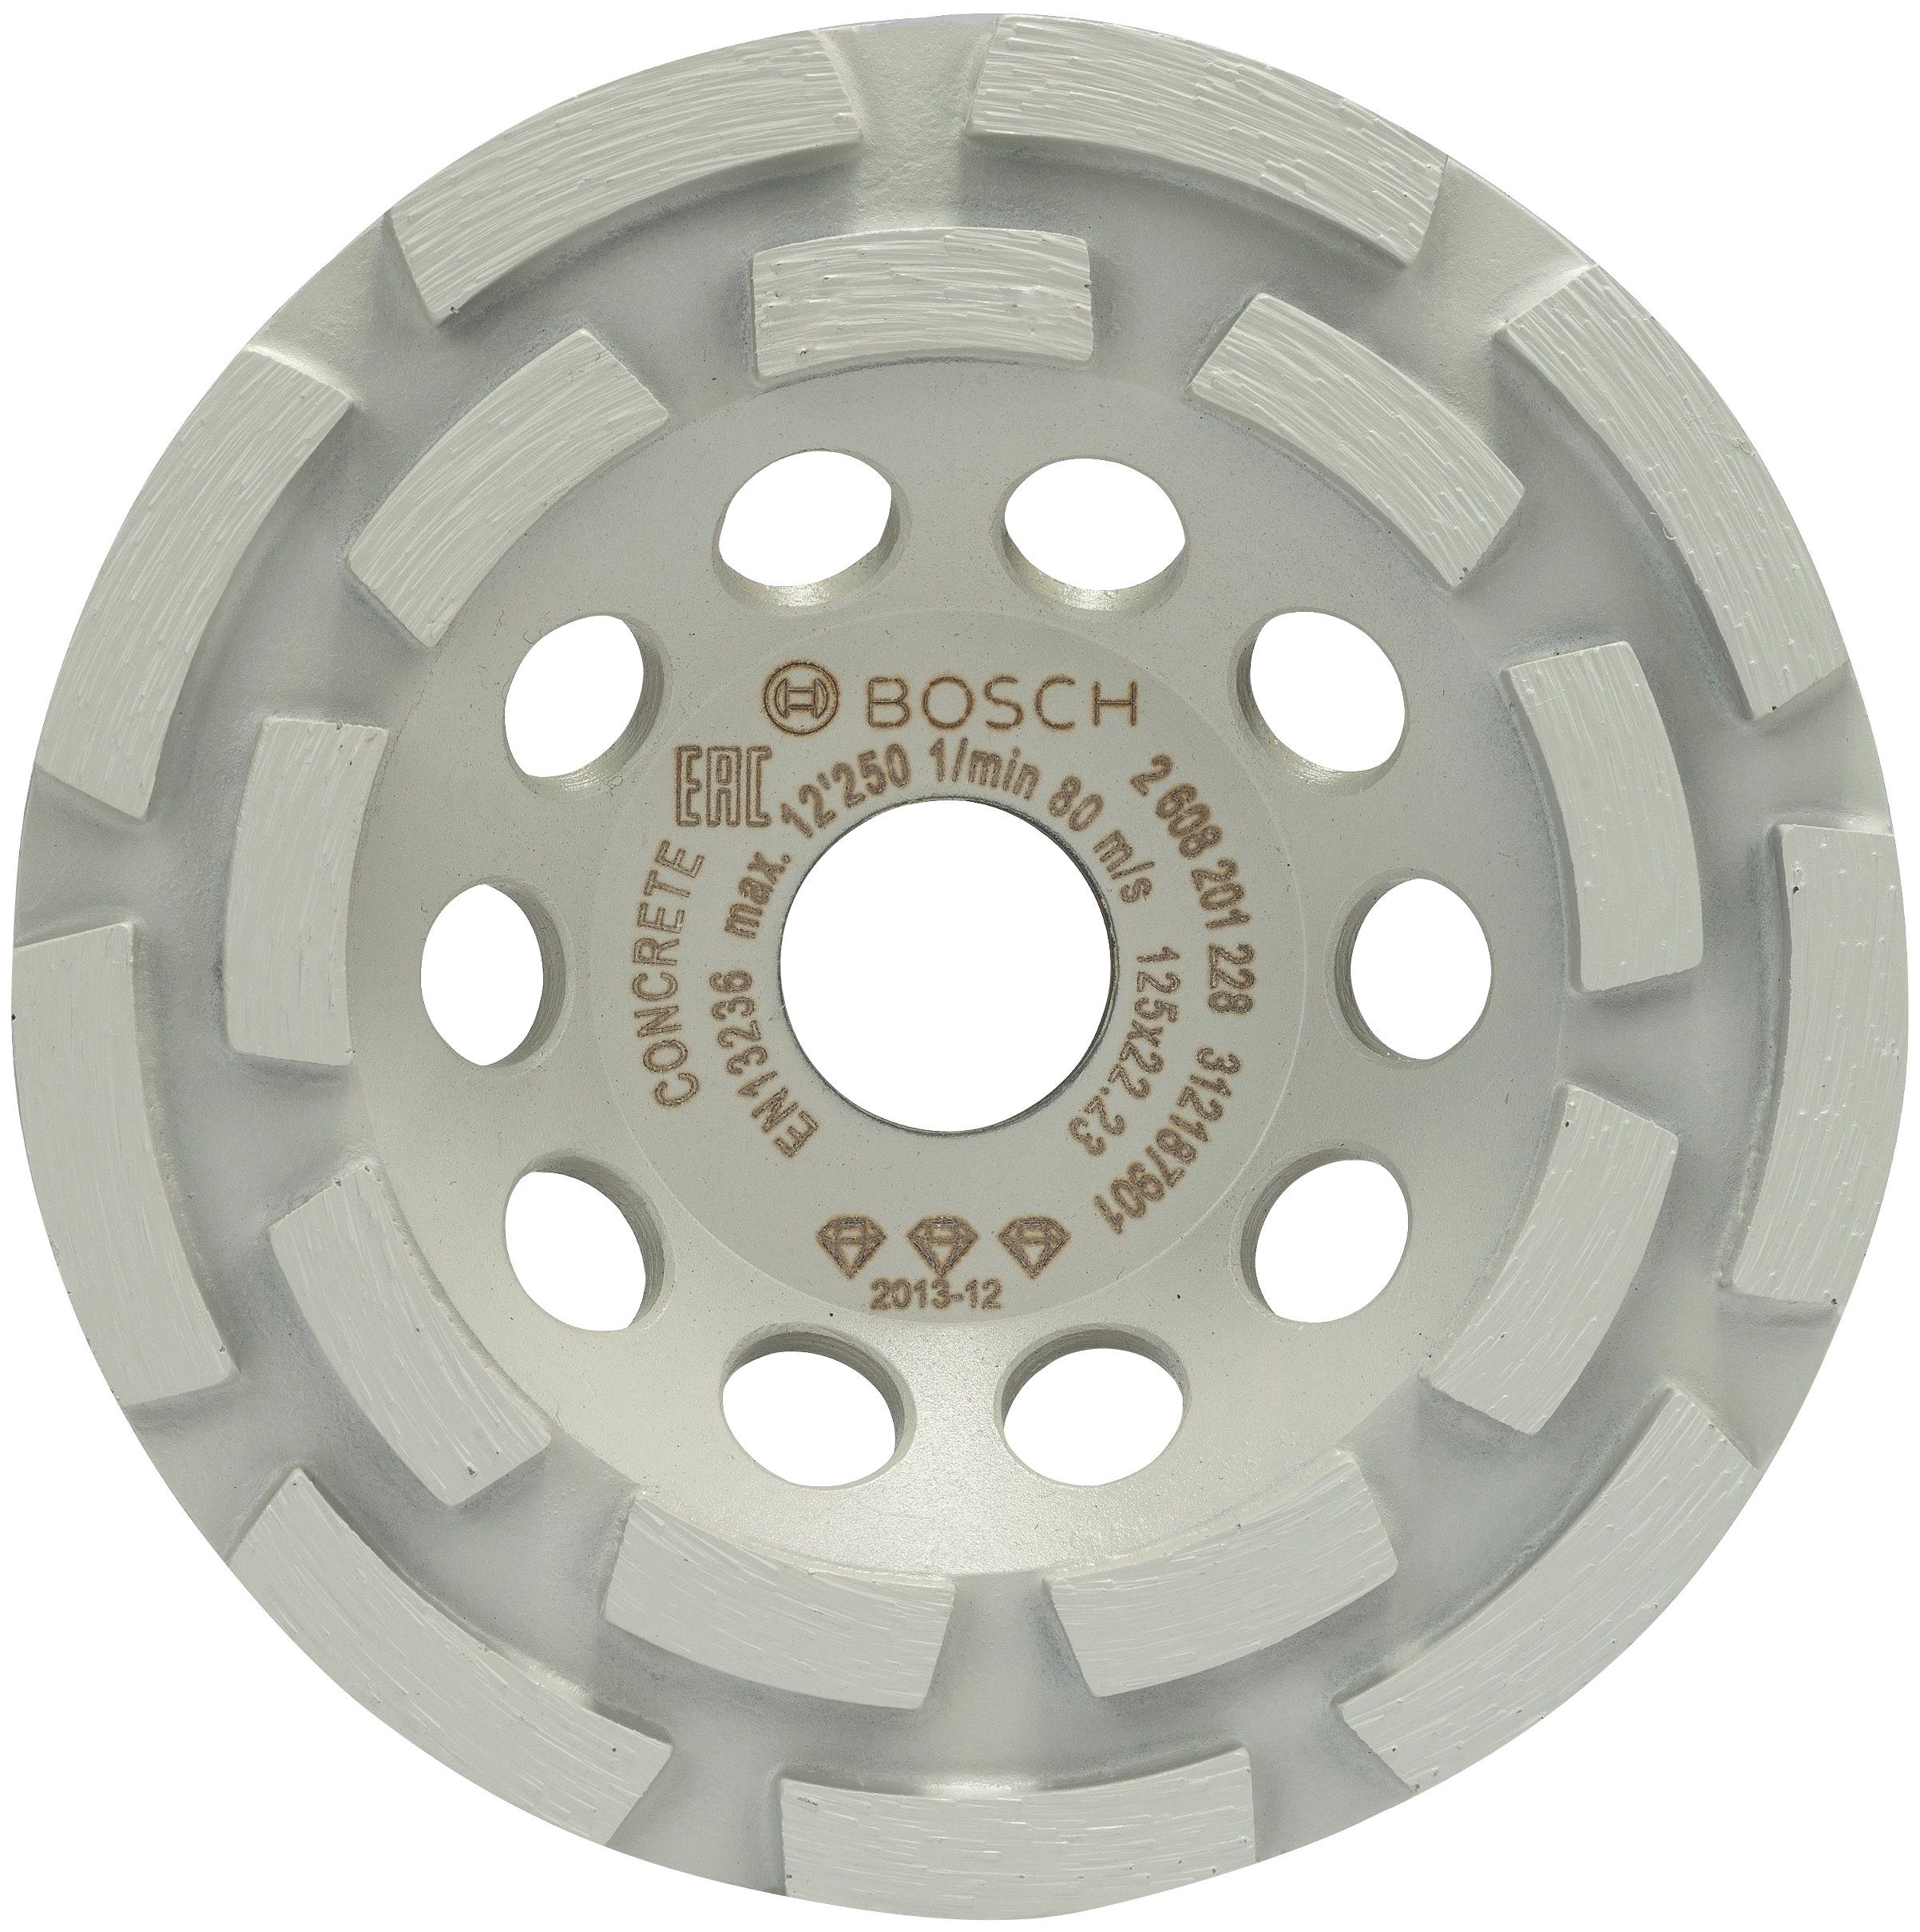 Bosch Professional Schleifteller Best for Concrete, Diamanttopfscheibe, 125 x 22,23 x 4,5 mm